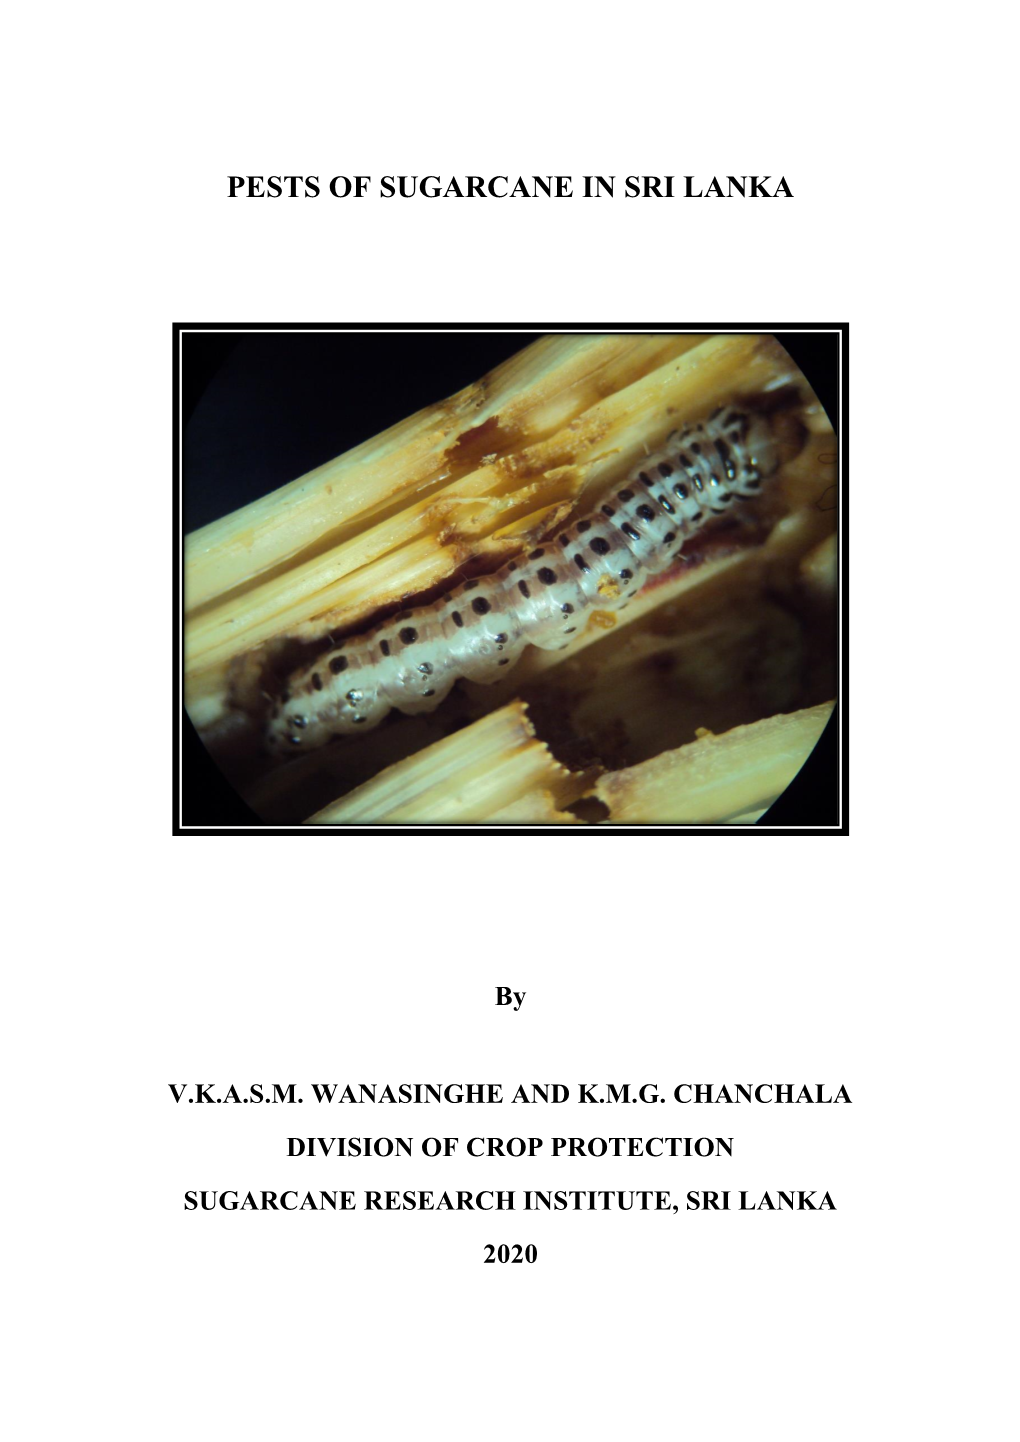 Pests of Sugarcane in Sri Lanka